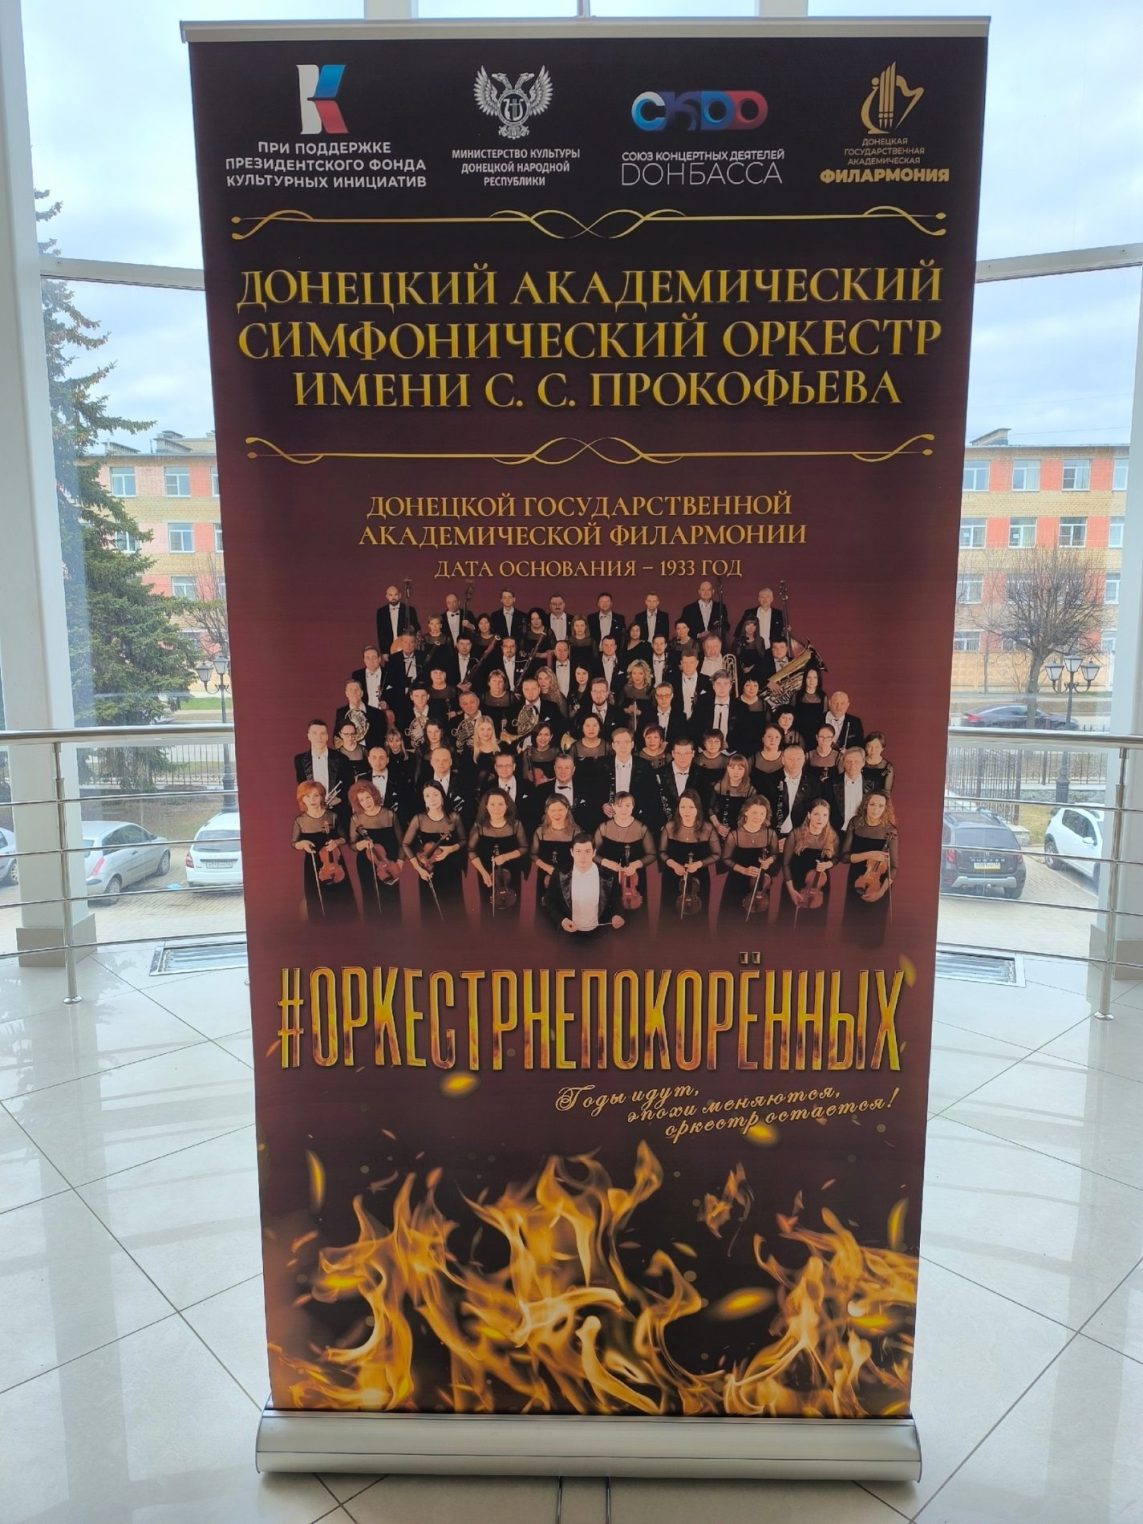 В Костроме с триумфом выступил «Оркестр непокоренных» из Донбасса